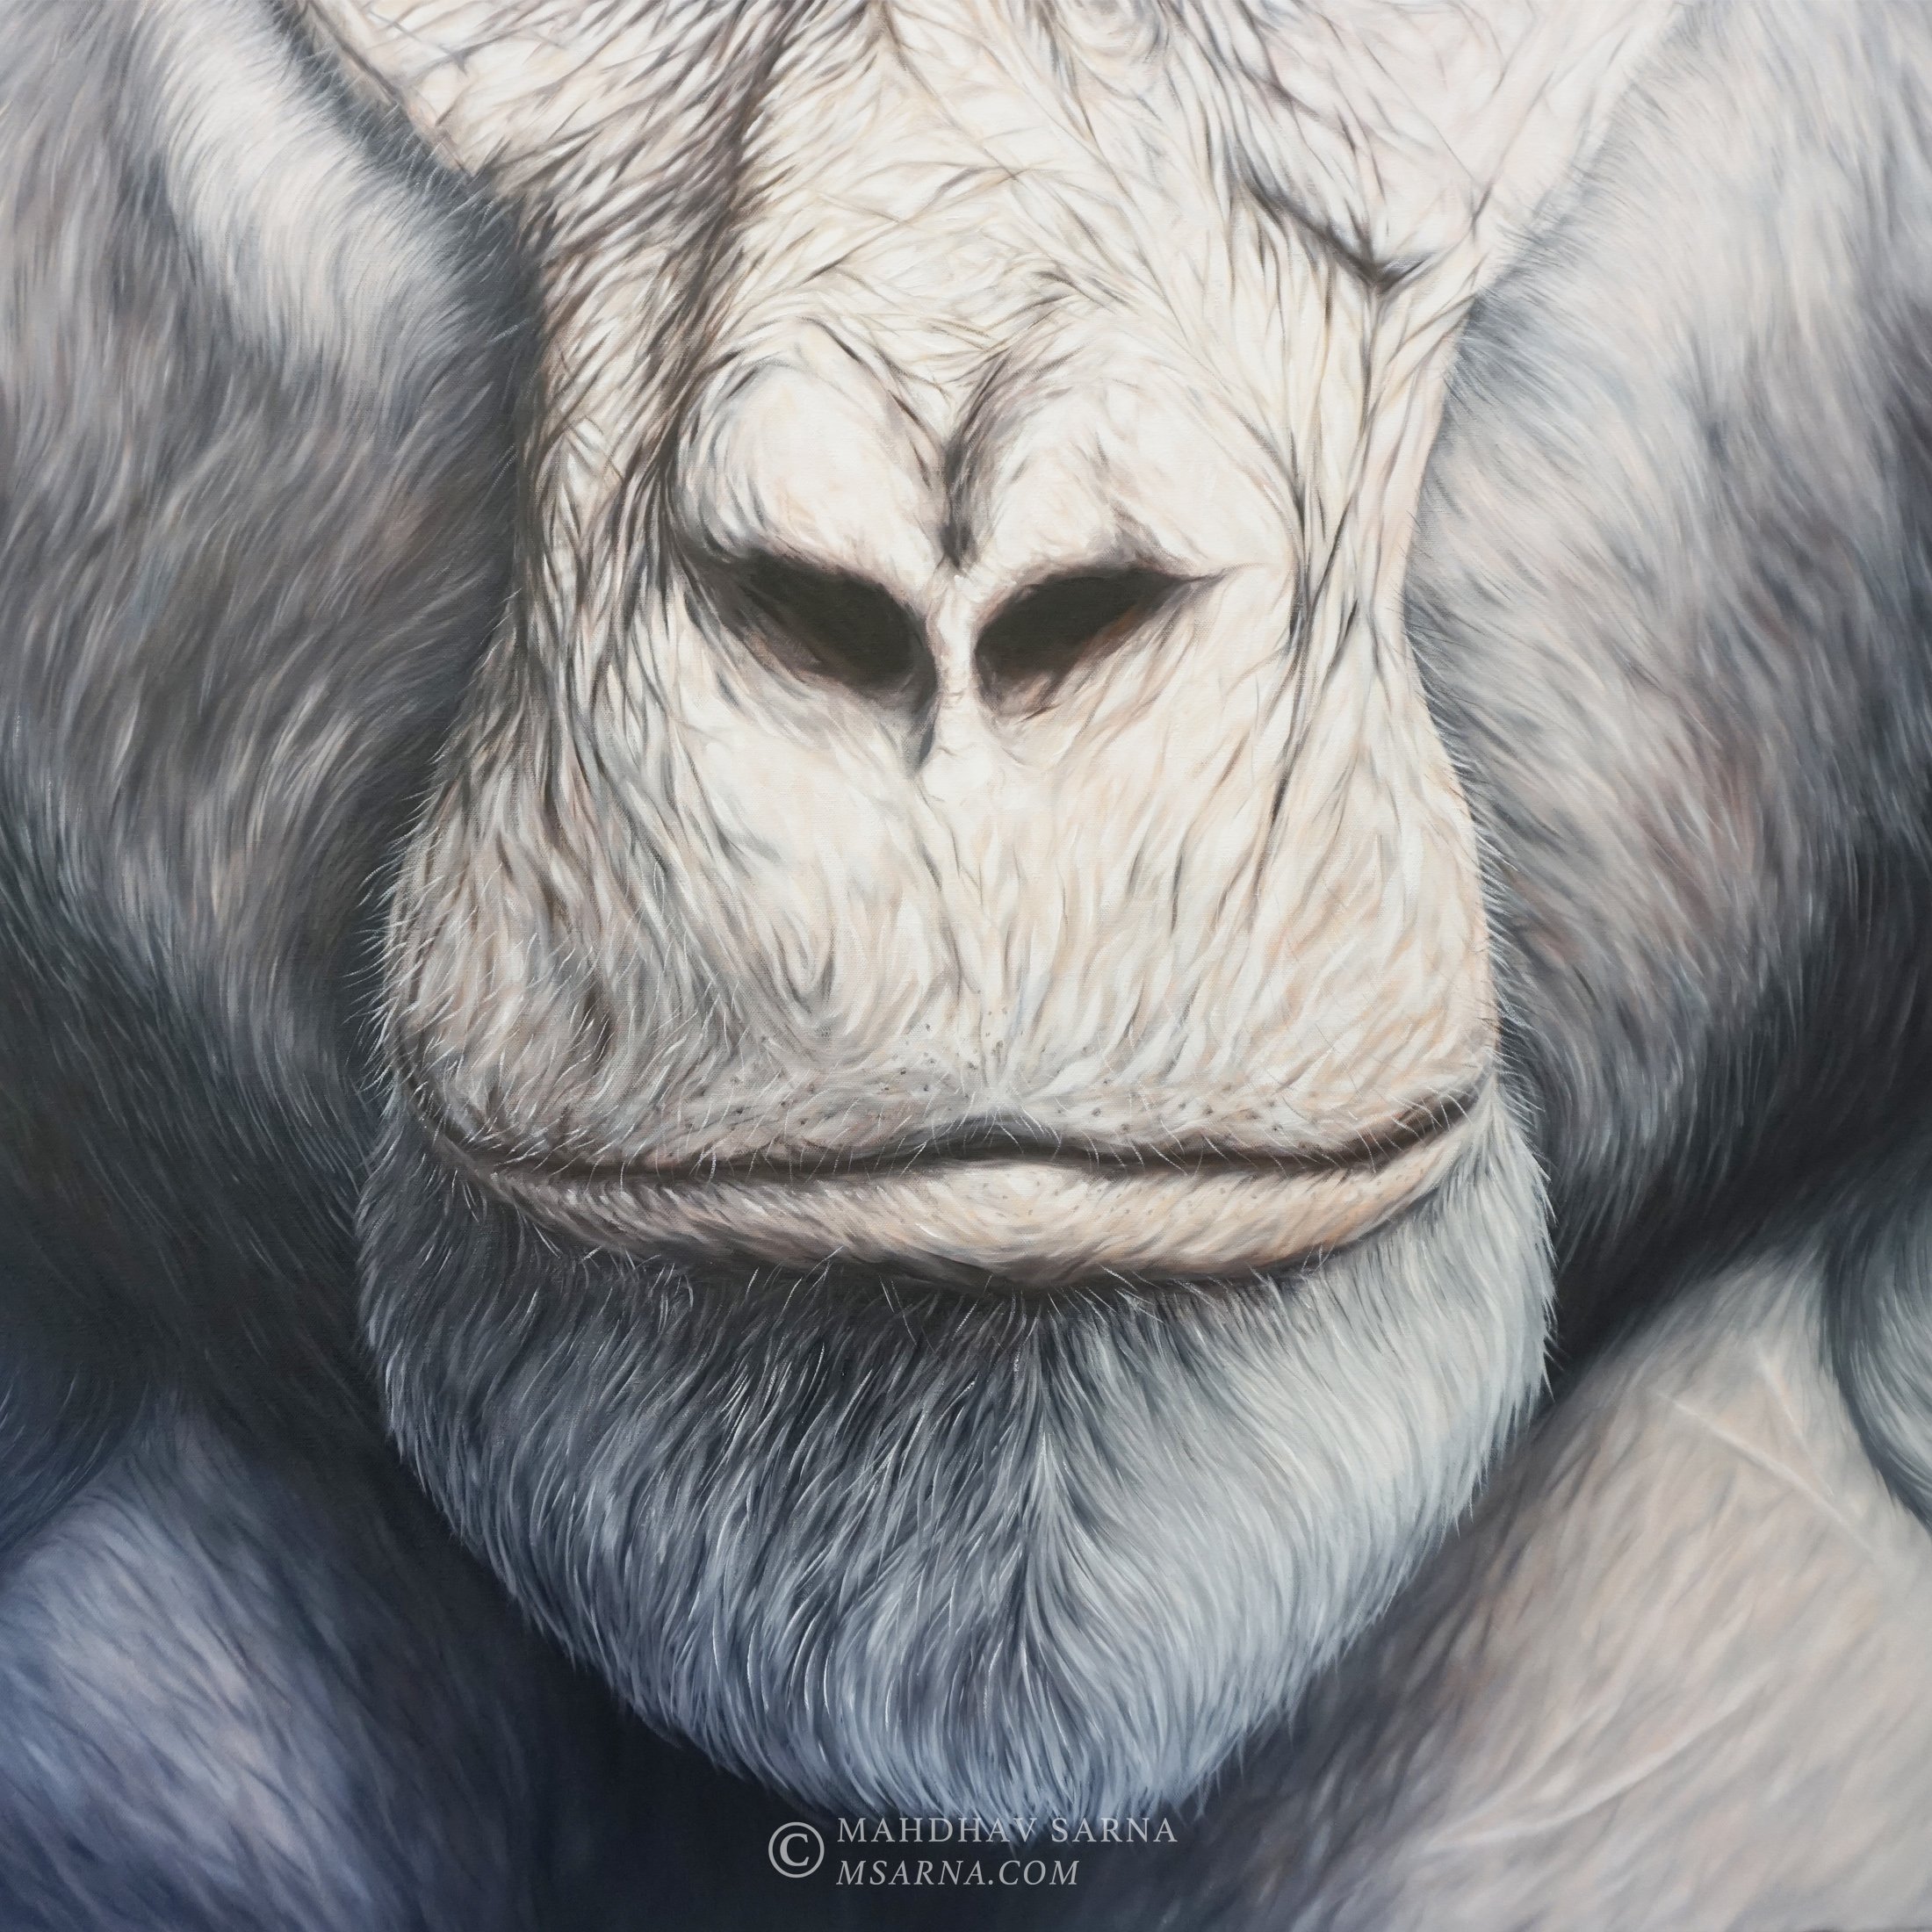 gorilla oil painting ists wildlife art mahdhav sarna 03.jpg